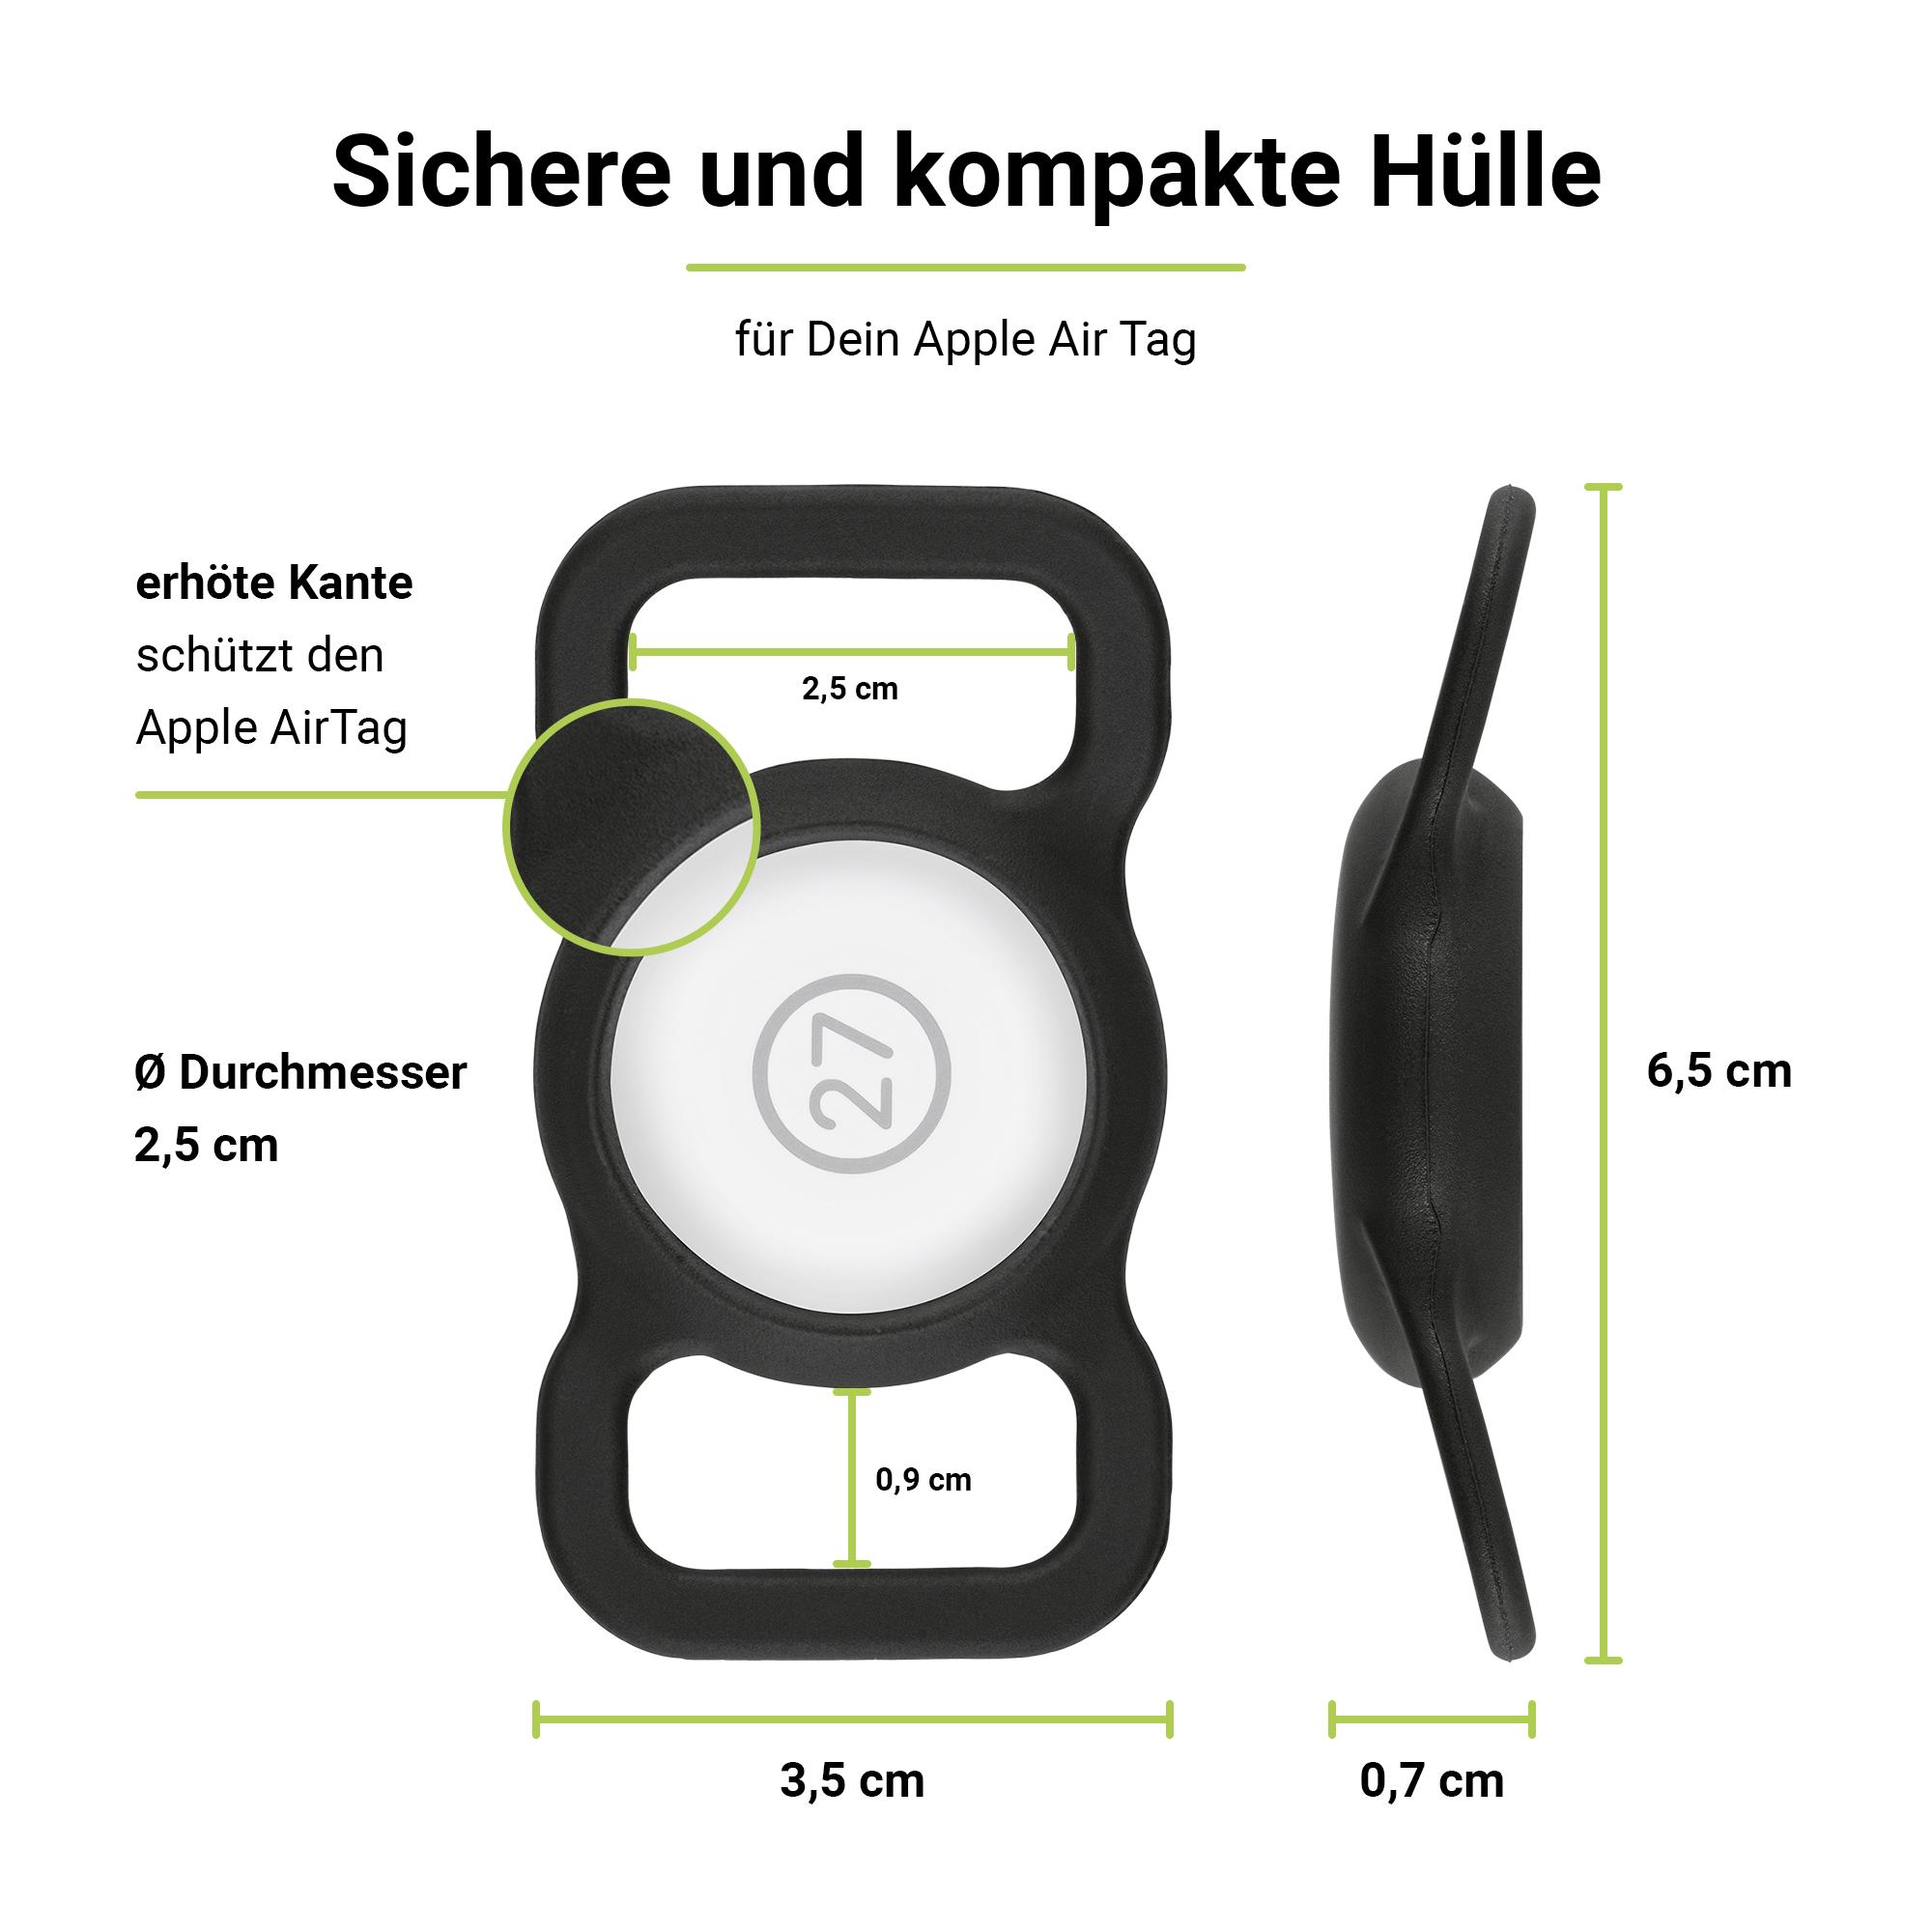 Halsband Halterung 2x Befestigung GPS-Tracker Schwarz AirTag PetStrap als von ARTWIZZ Apple